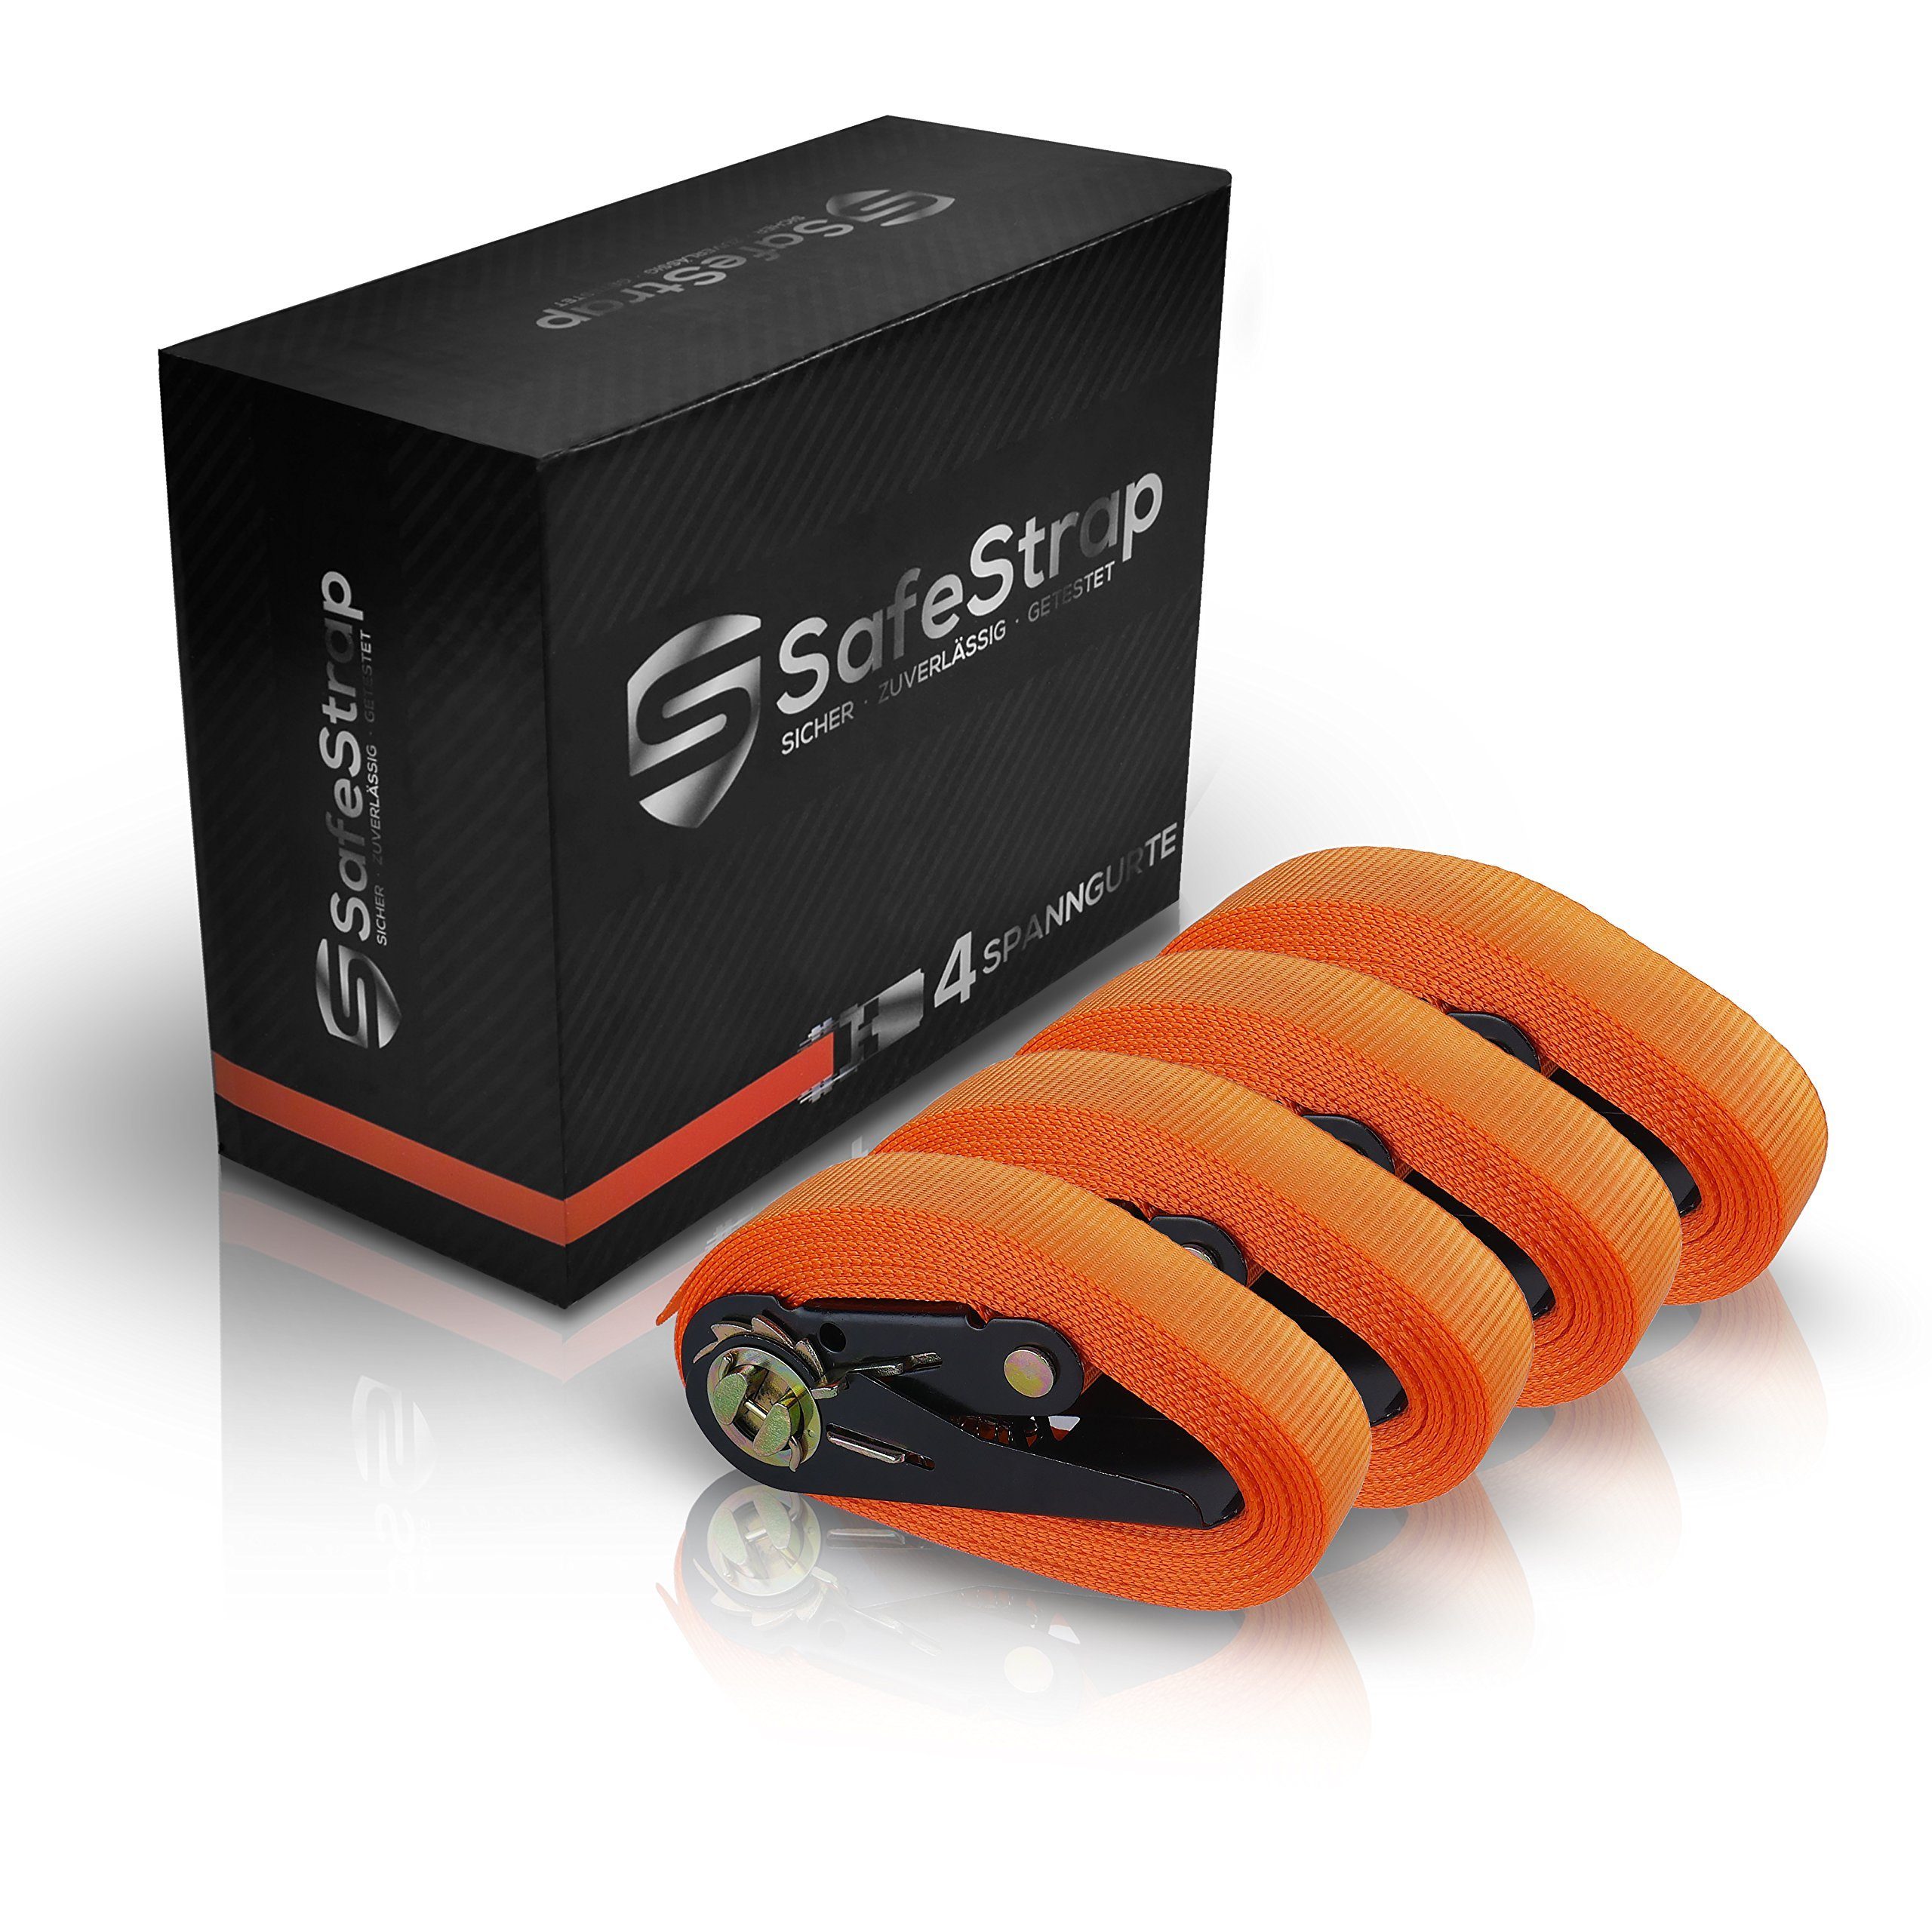 Safestrap Spanngurt Spanngurte mit Ratsche 1600kg Kapazität - Enorm robust Orange 4M